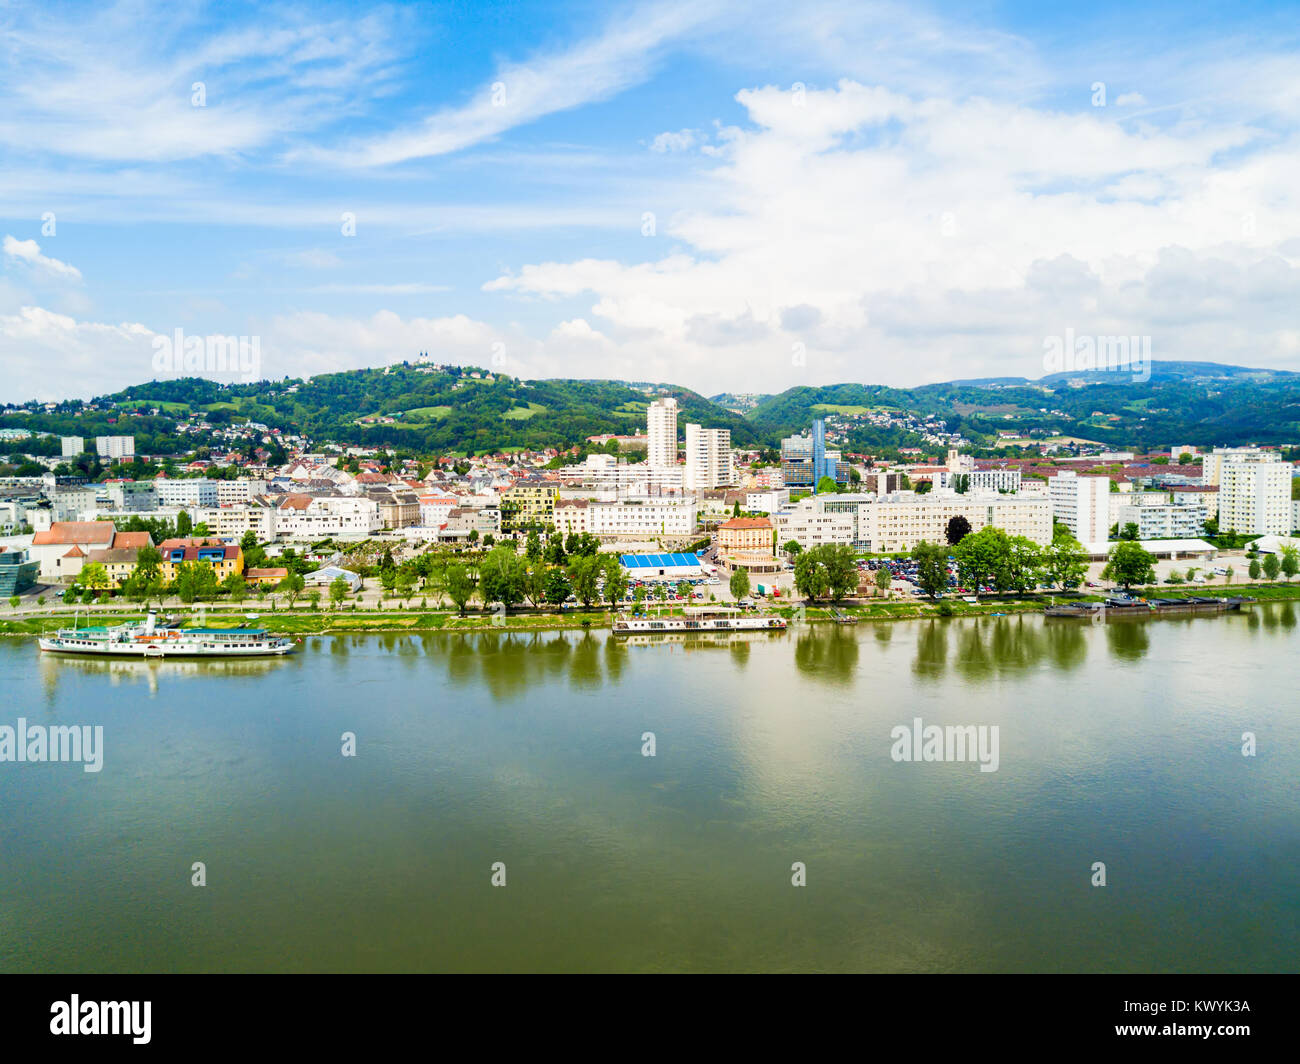 Le centre-ville de Linz et Danube vue panoramique aérienne en Autriche. Linz est la troisième plus grande ville d'Autriche. Banque D'Images